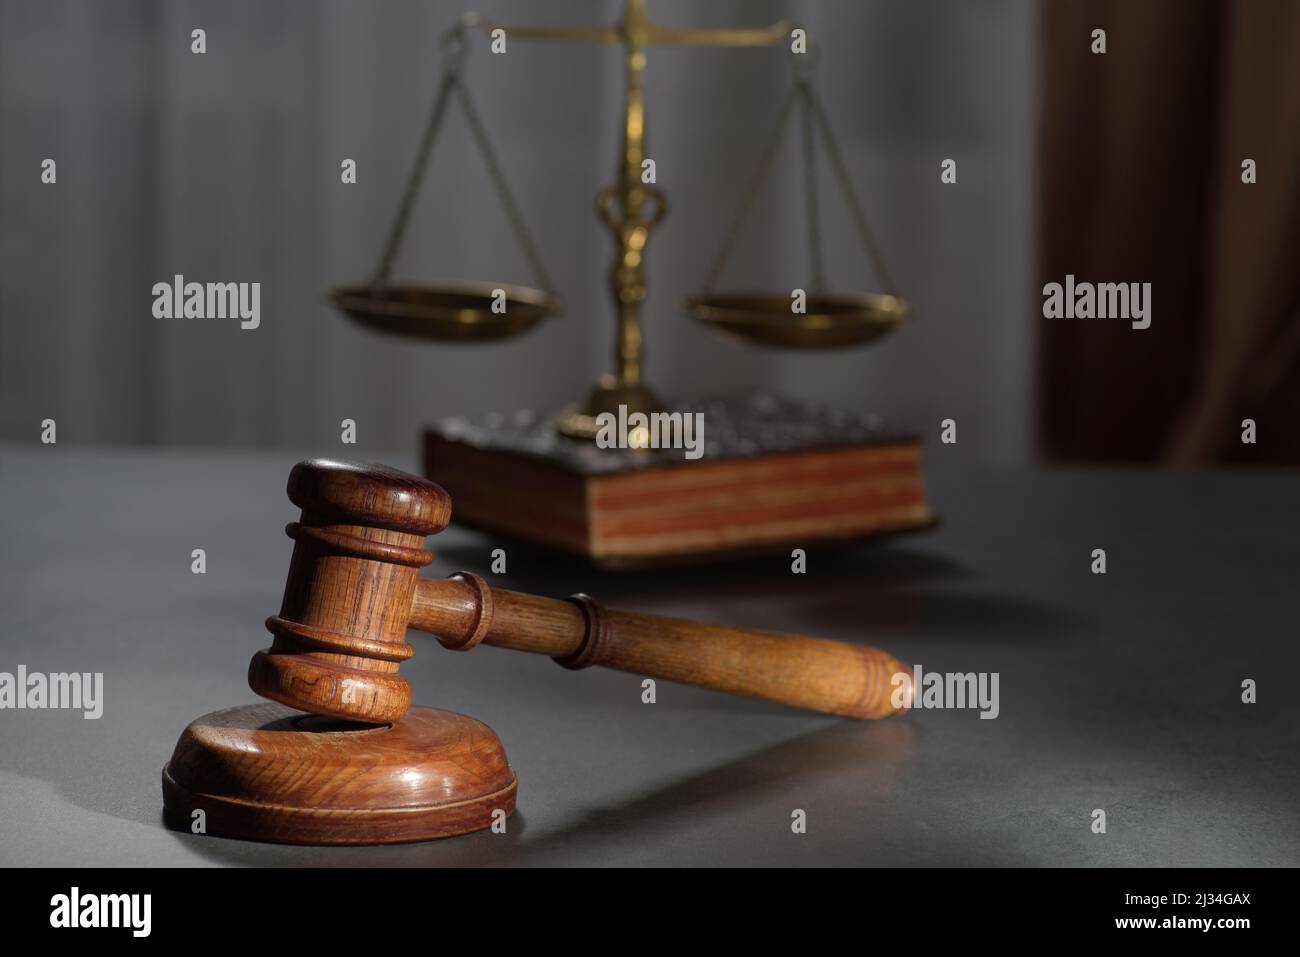 Los jueces de madera gavel y símbolo de la ley y la justicia sobre la mesa en una sala de audiencias o en una oficina de aplicación de la ley sobre fondo oscuro Foto de stock